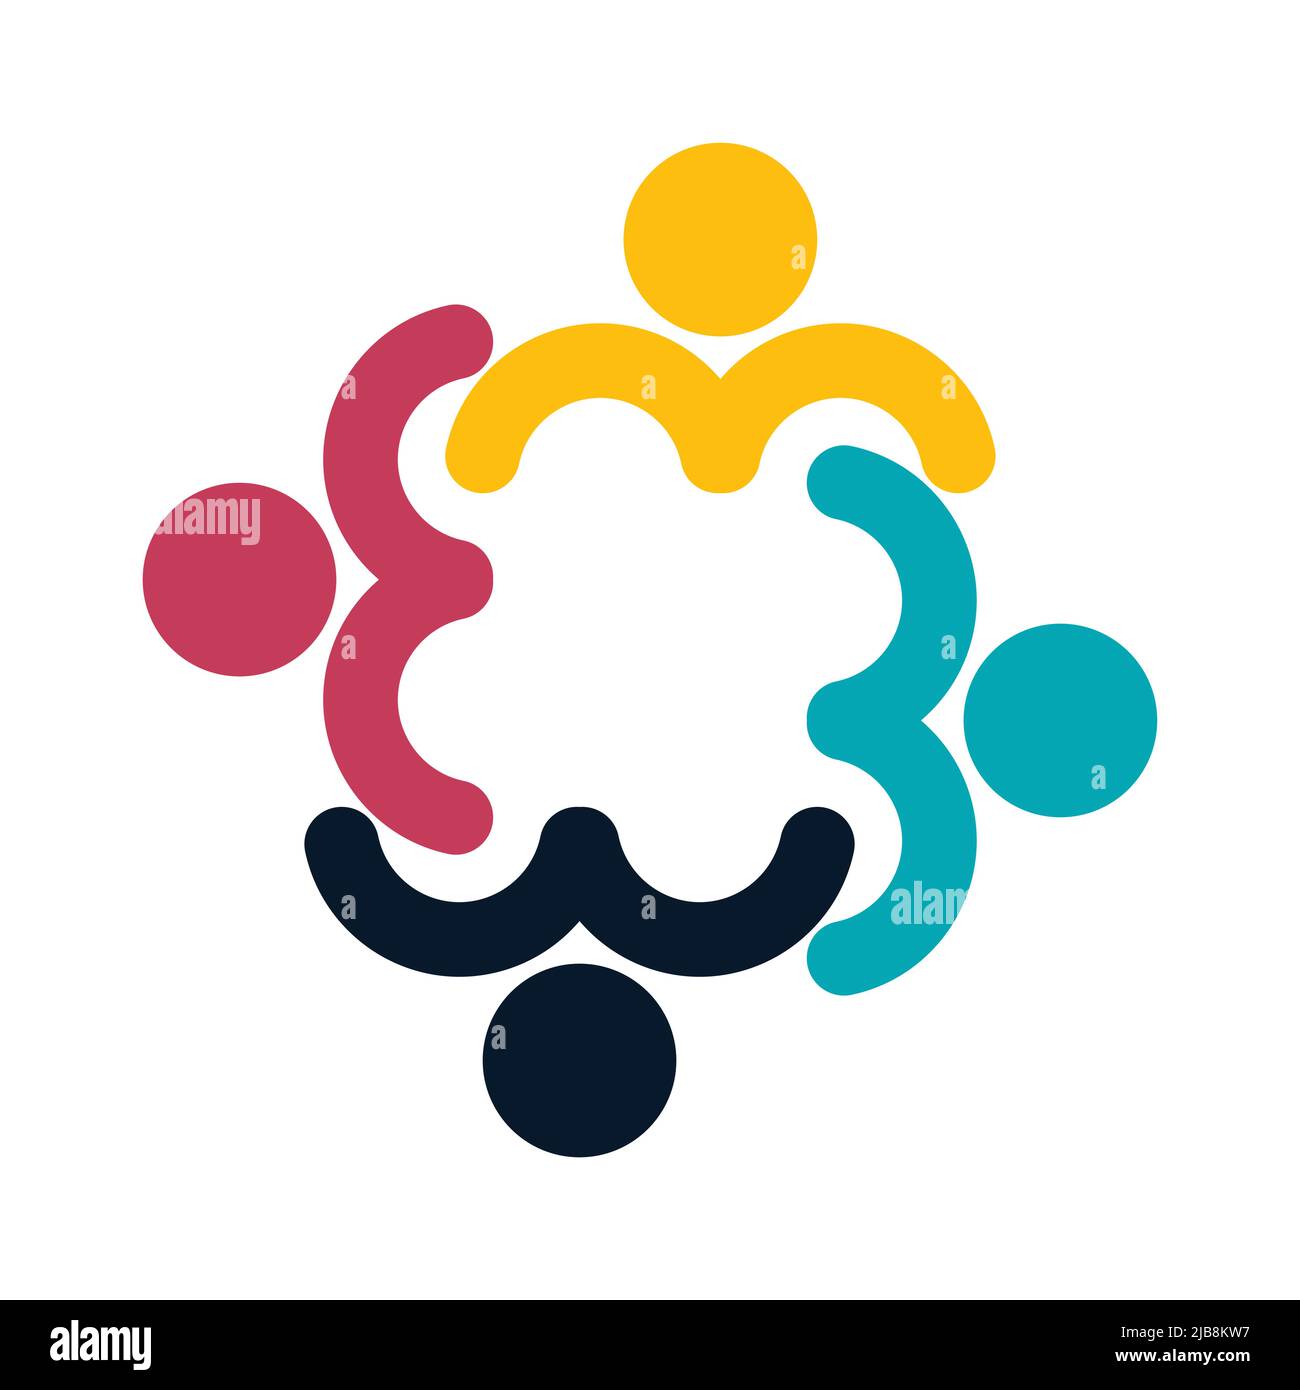 People-Logo. Gruppenarbeit Symbol von vier Personen in einem Kreis, Vektor-Illustration Stock Vektor